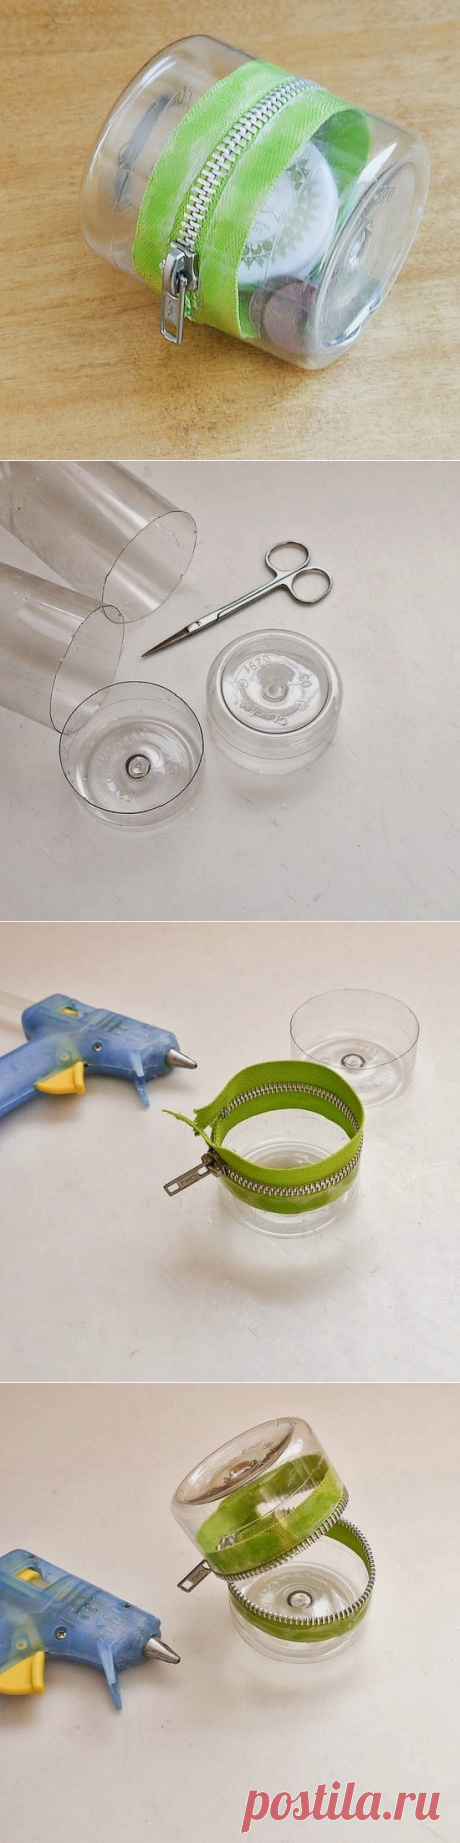 Как сделать копилку из пластиковой бутылки - Поделки с детьми | Деткиподелки